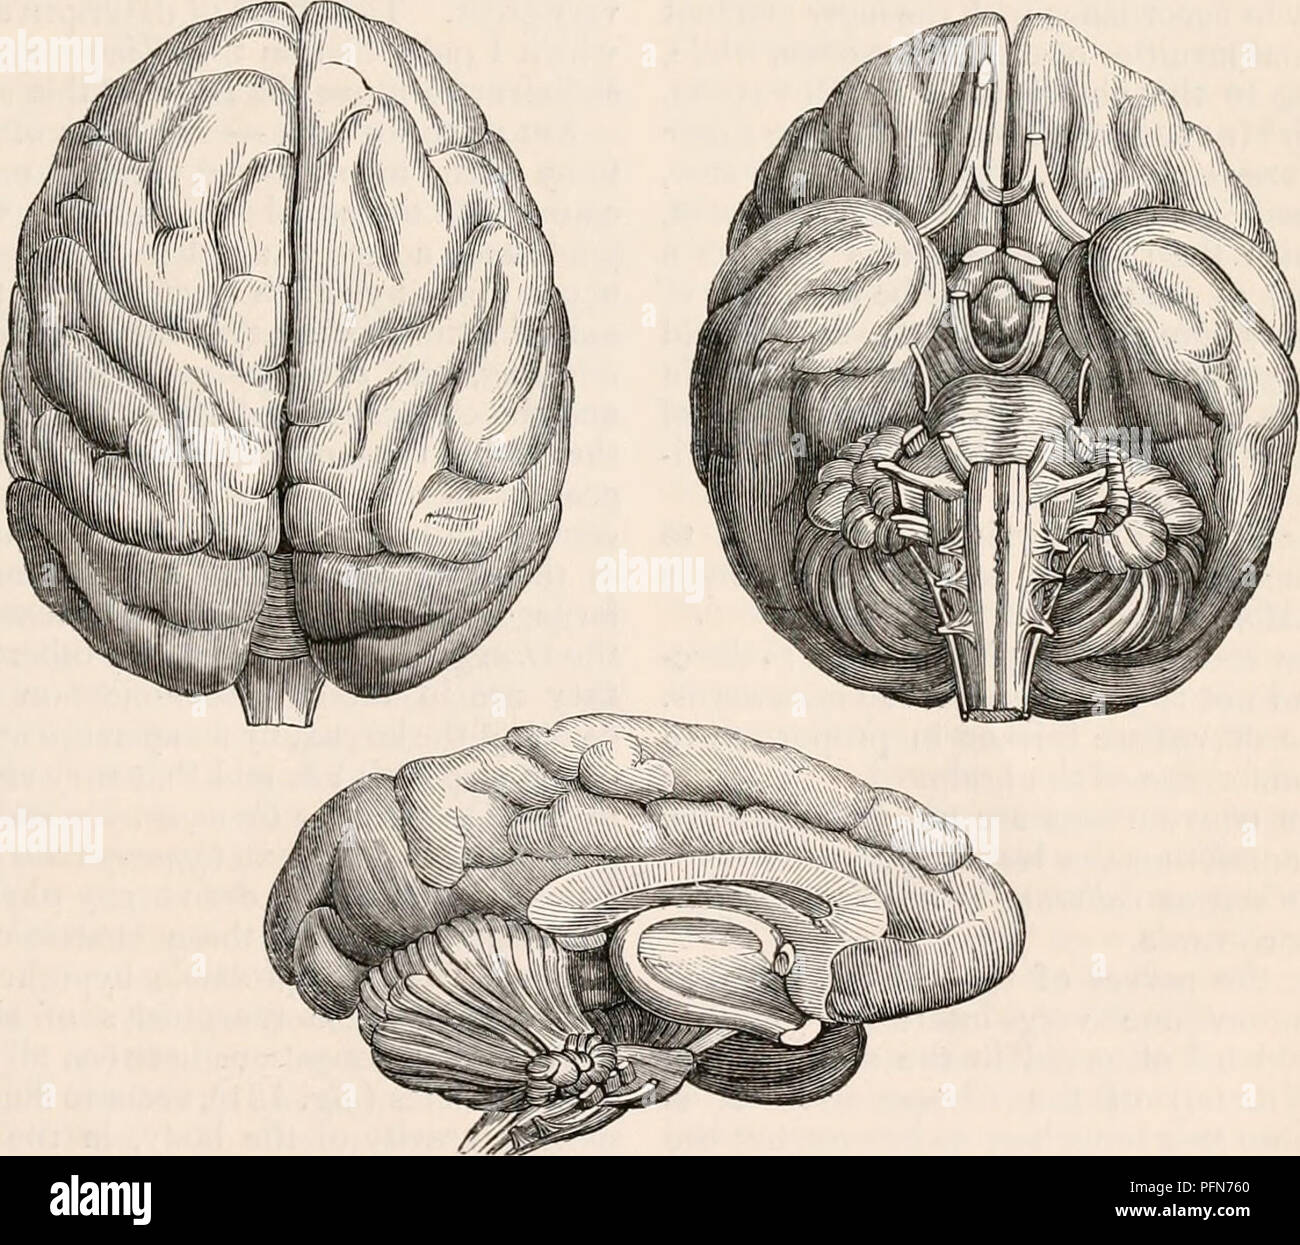 Présentation d'un cerveau de fœtus de chimpanzé - Persée